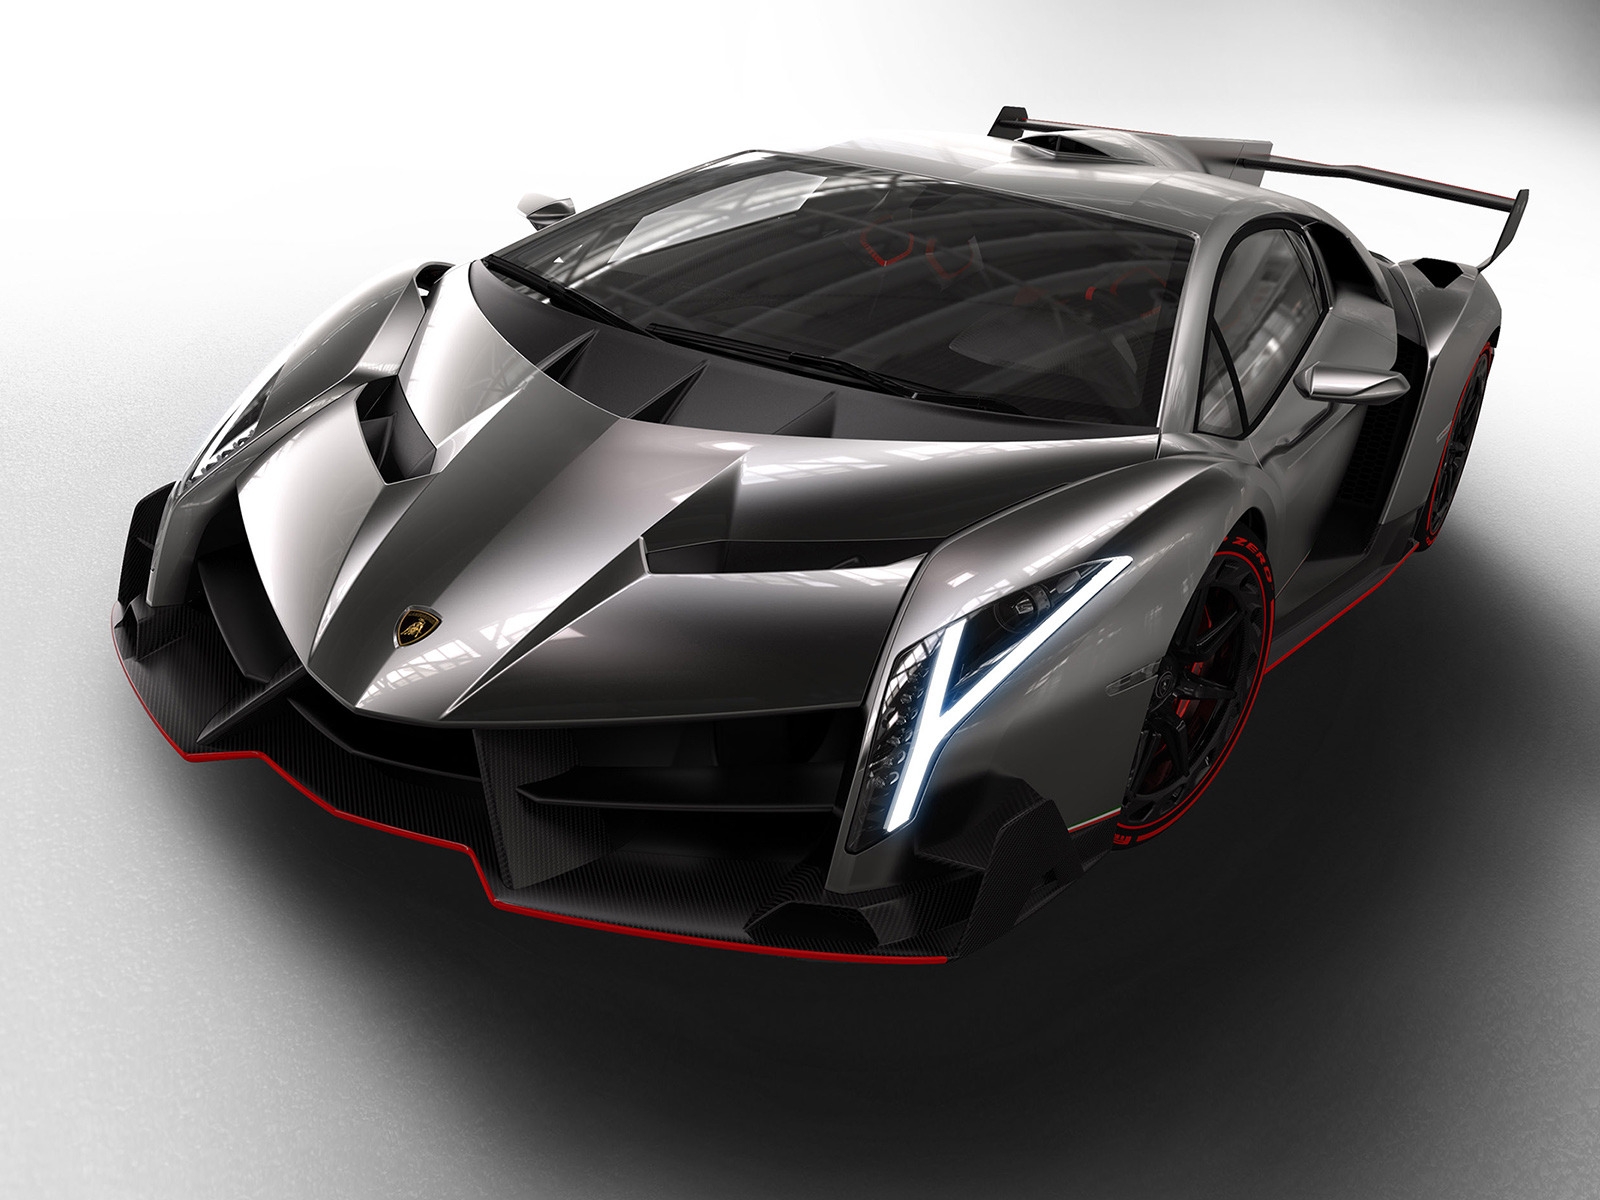 Lamborghini Veneno Studio for 1600 x 1200 resolution